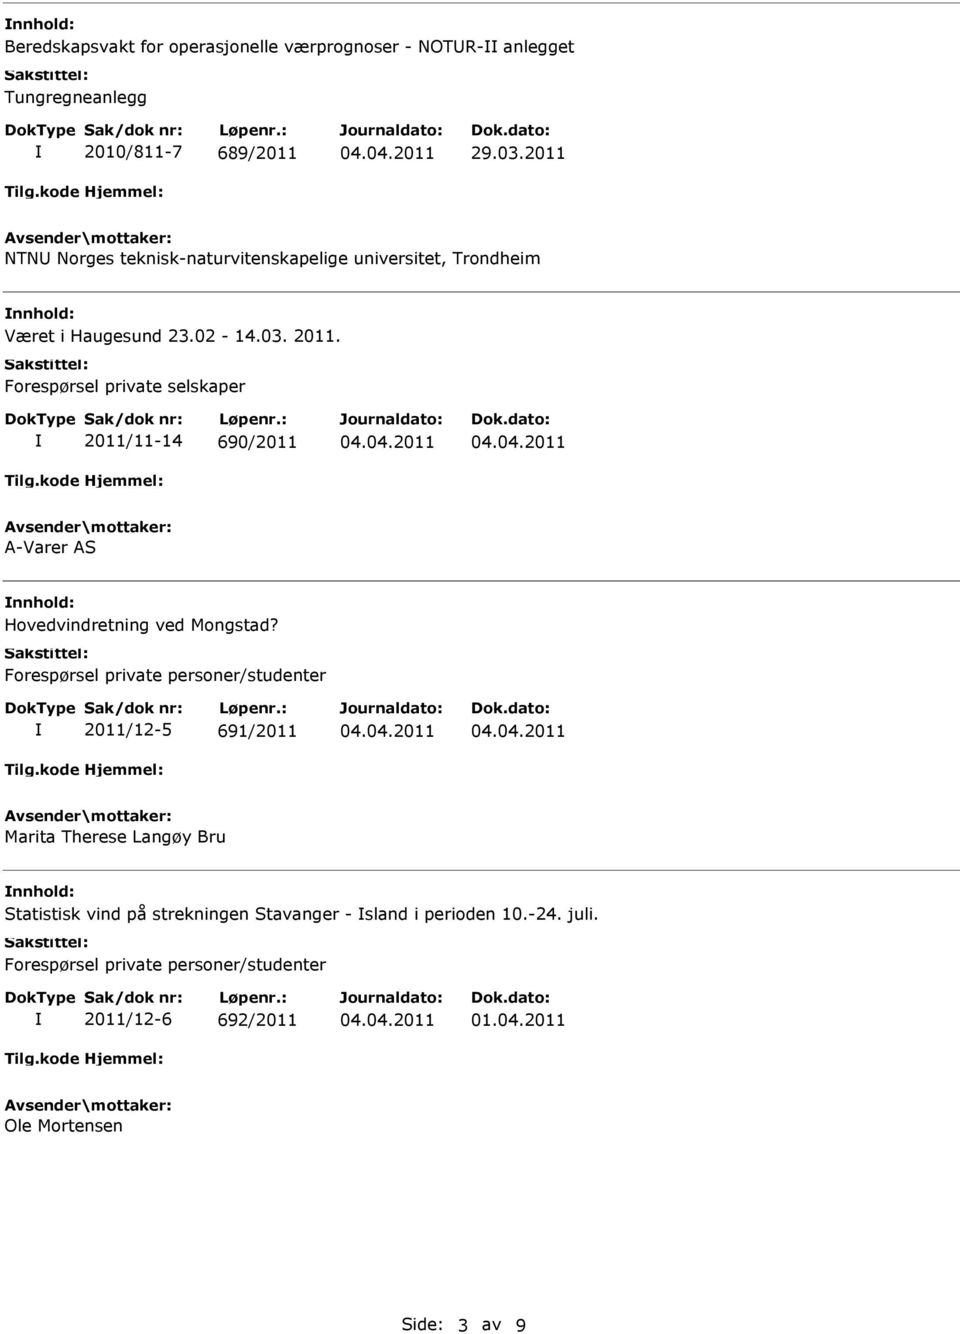 Forespørsel private selskaper 2011/11-14 690/2011 A-Varer AS Hovedvindretning ved Mongstad?